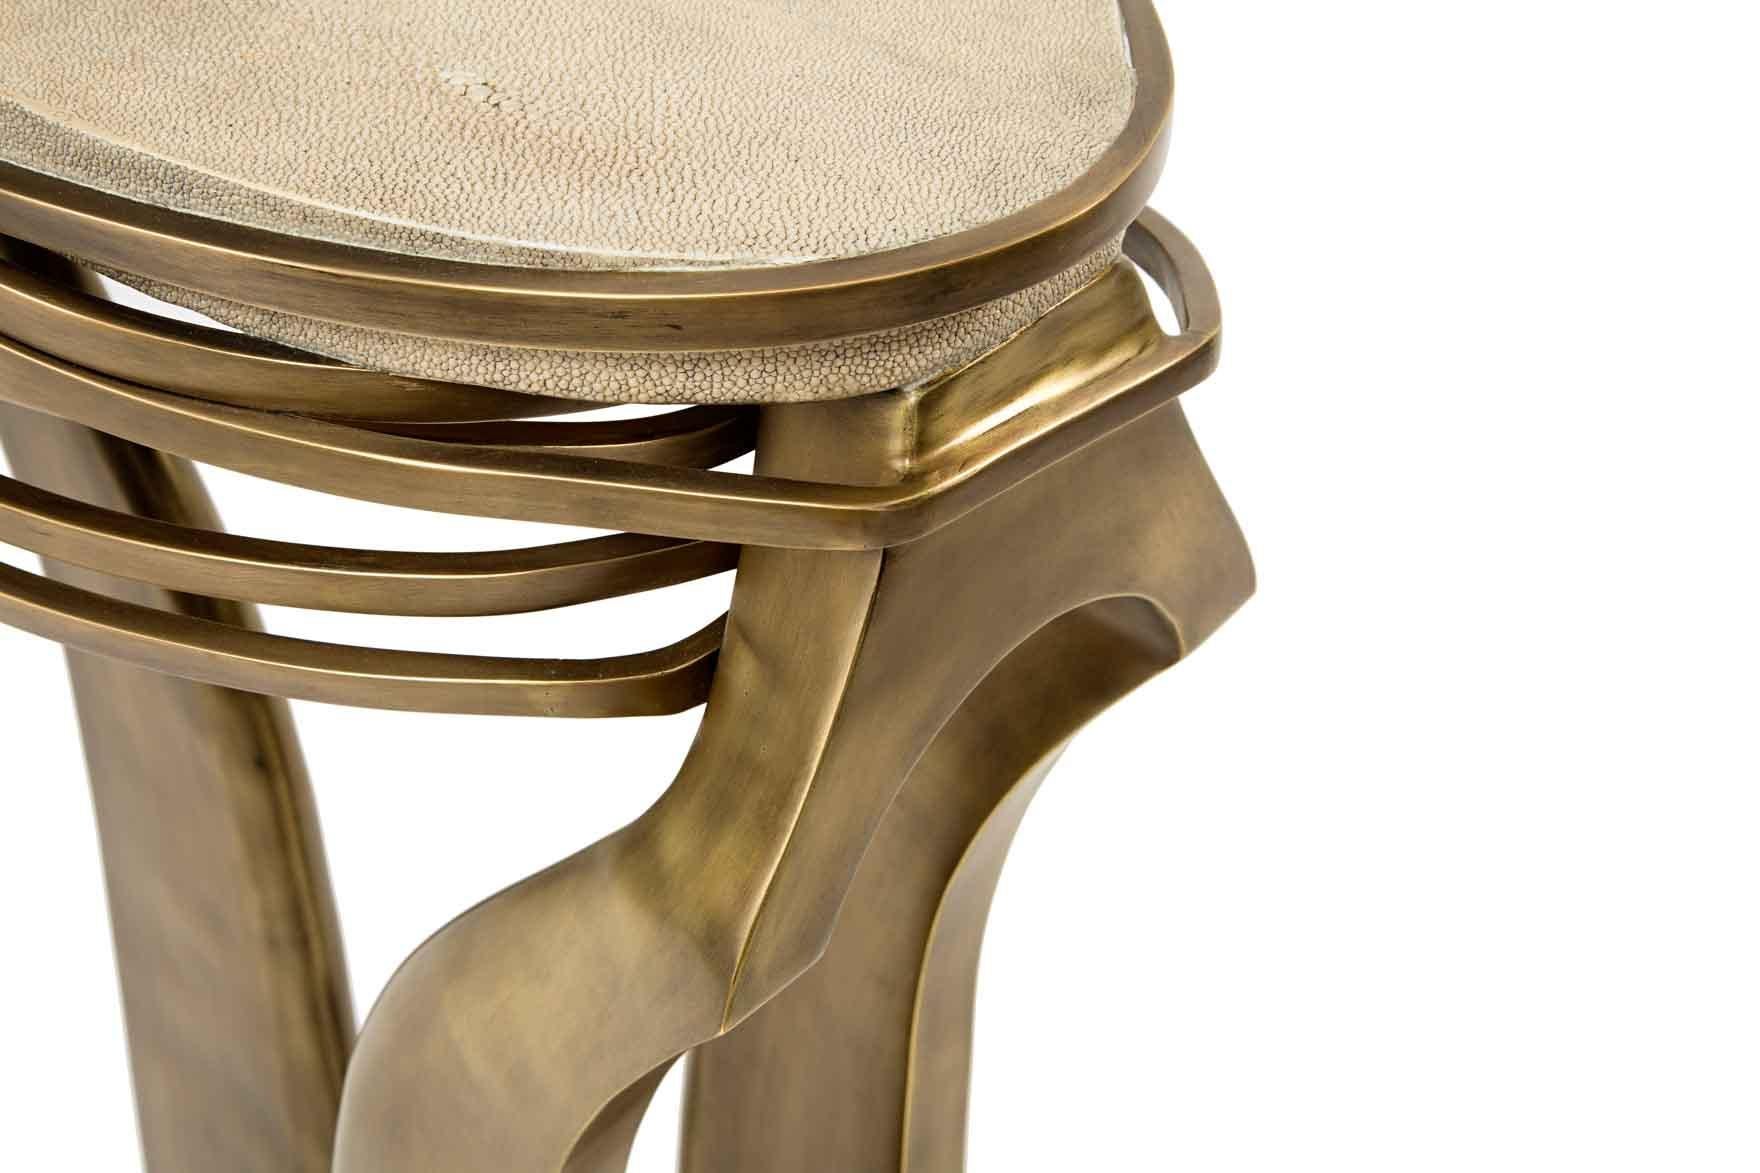 La table d'appoint Galaxy en petit modèle est une pièce emblématique de Kifu Paris. Fantaisiste, sculptural et audacieux, ce meuble est la pièce d'accent ultime dans n'importe quel espace. Les anneaux complexes en laiton bronze-patiné encerclent le